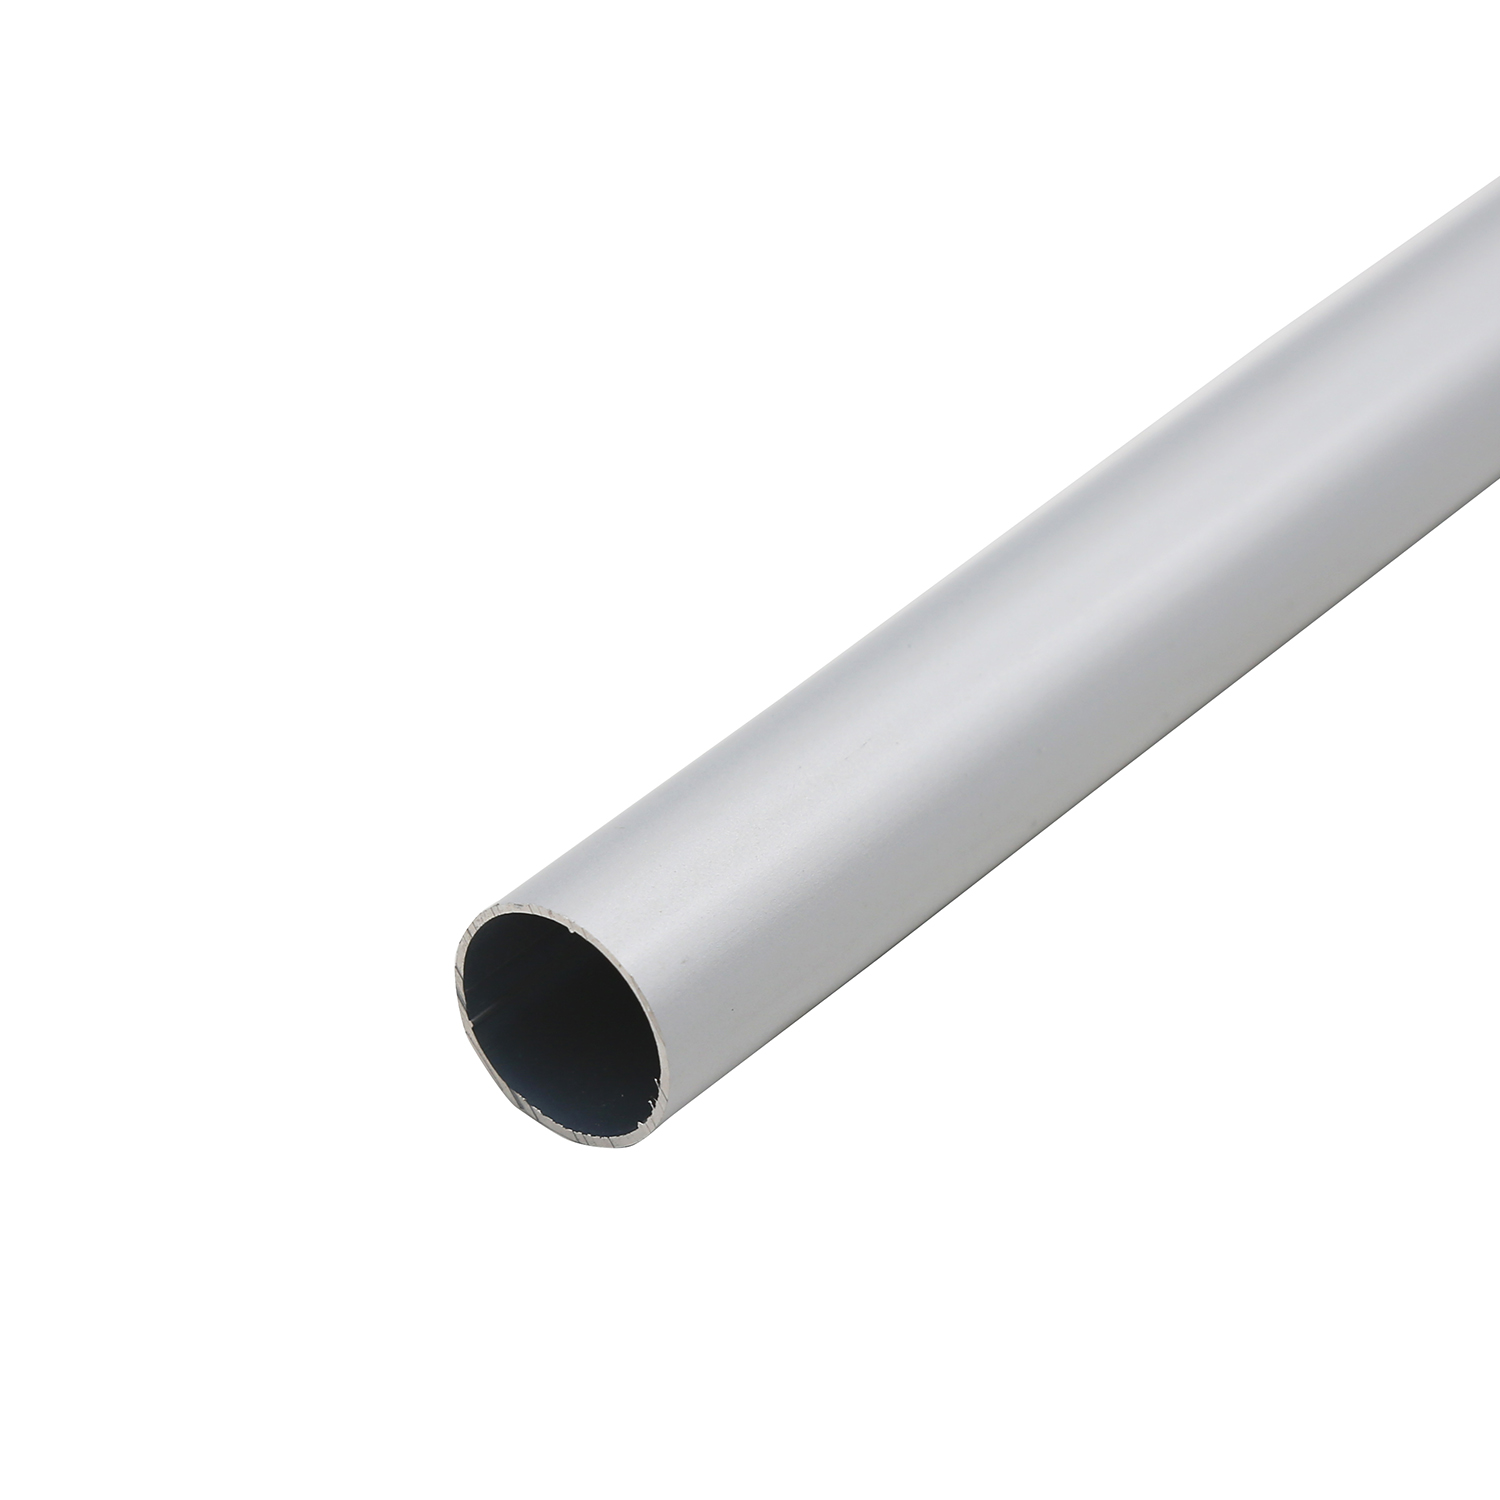 Aluminum extrusion profile for industrials tube